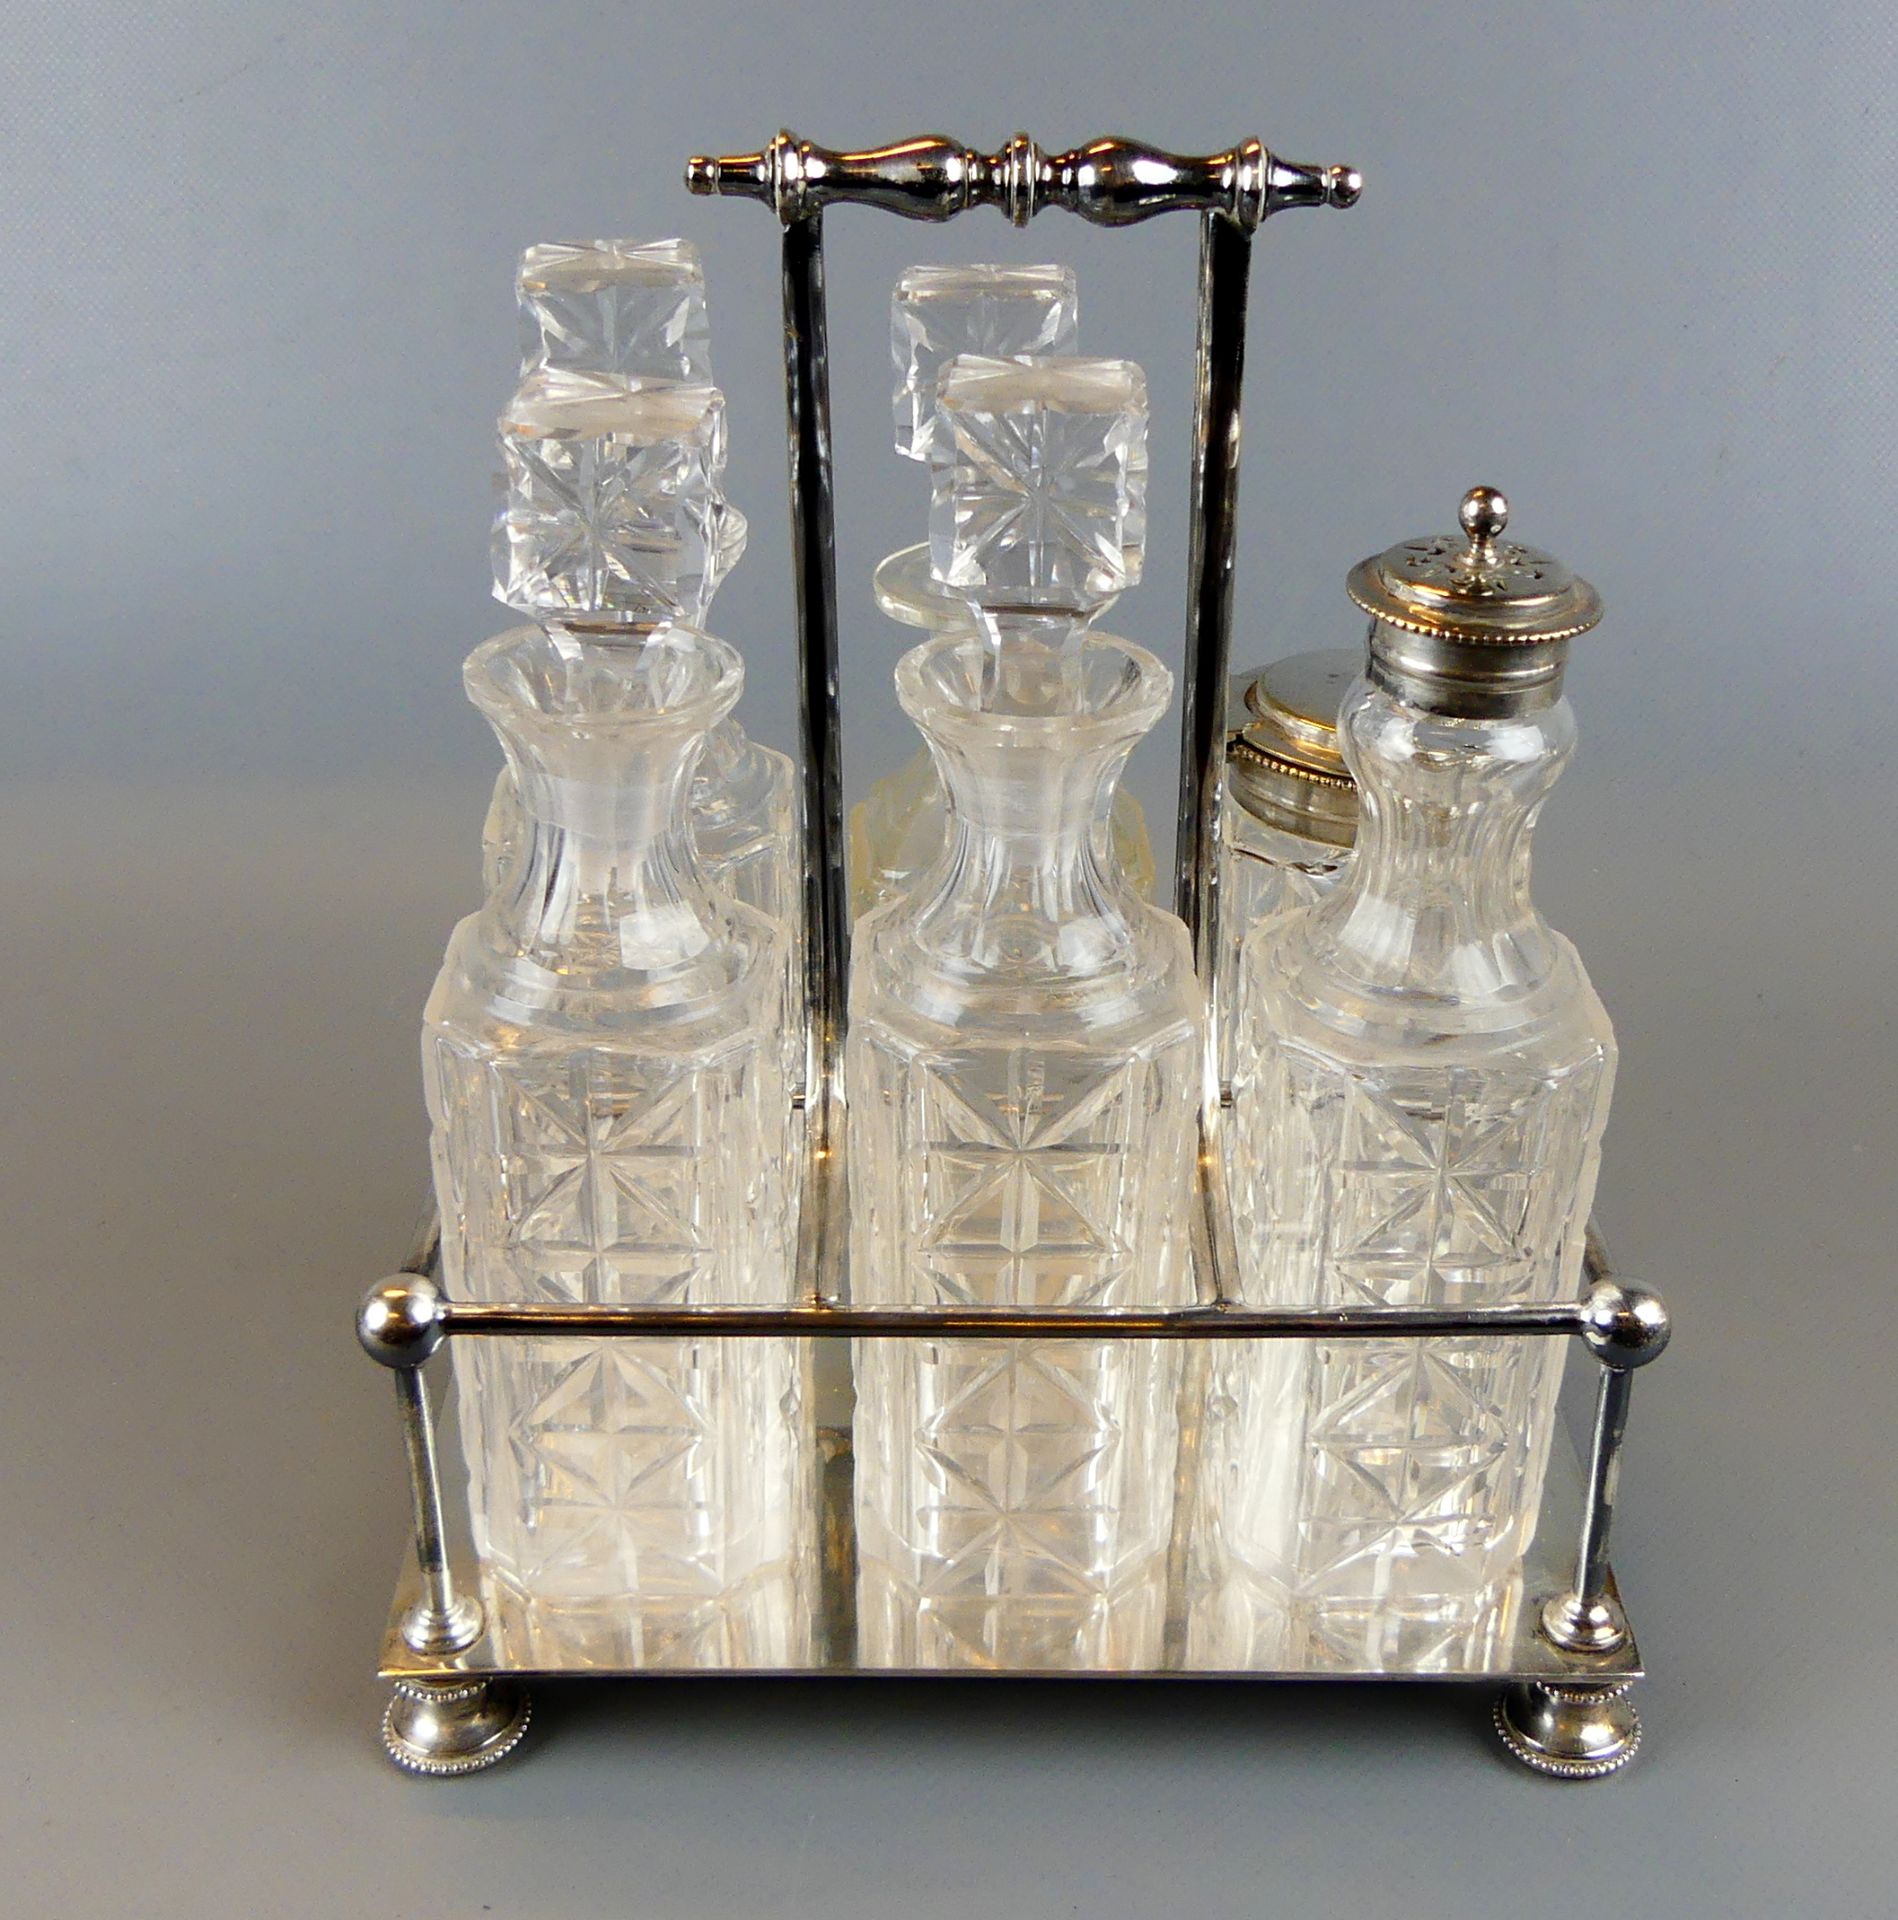 Menage, 6-teilig plated, 4 Kristallflaschen mit Stöpsel, Senfgefäß, Streuer mit Deckel,